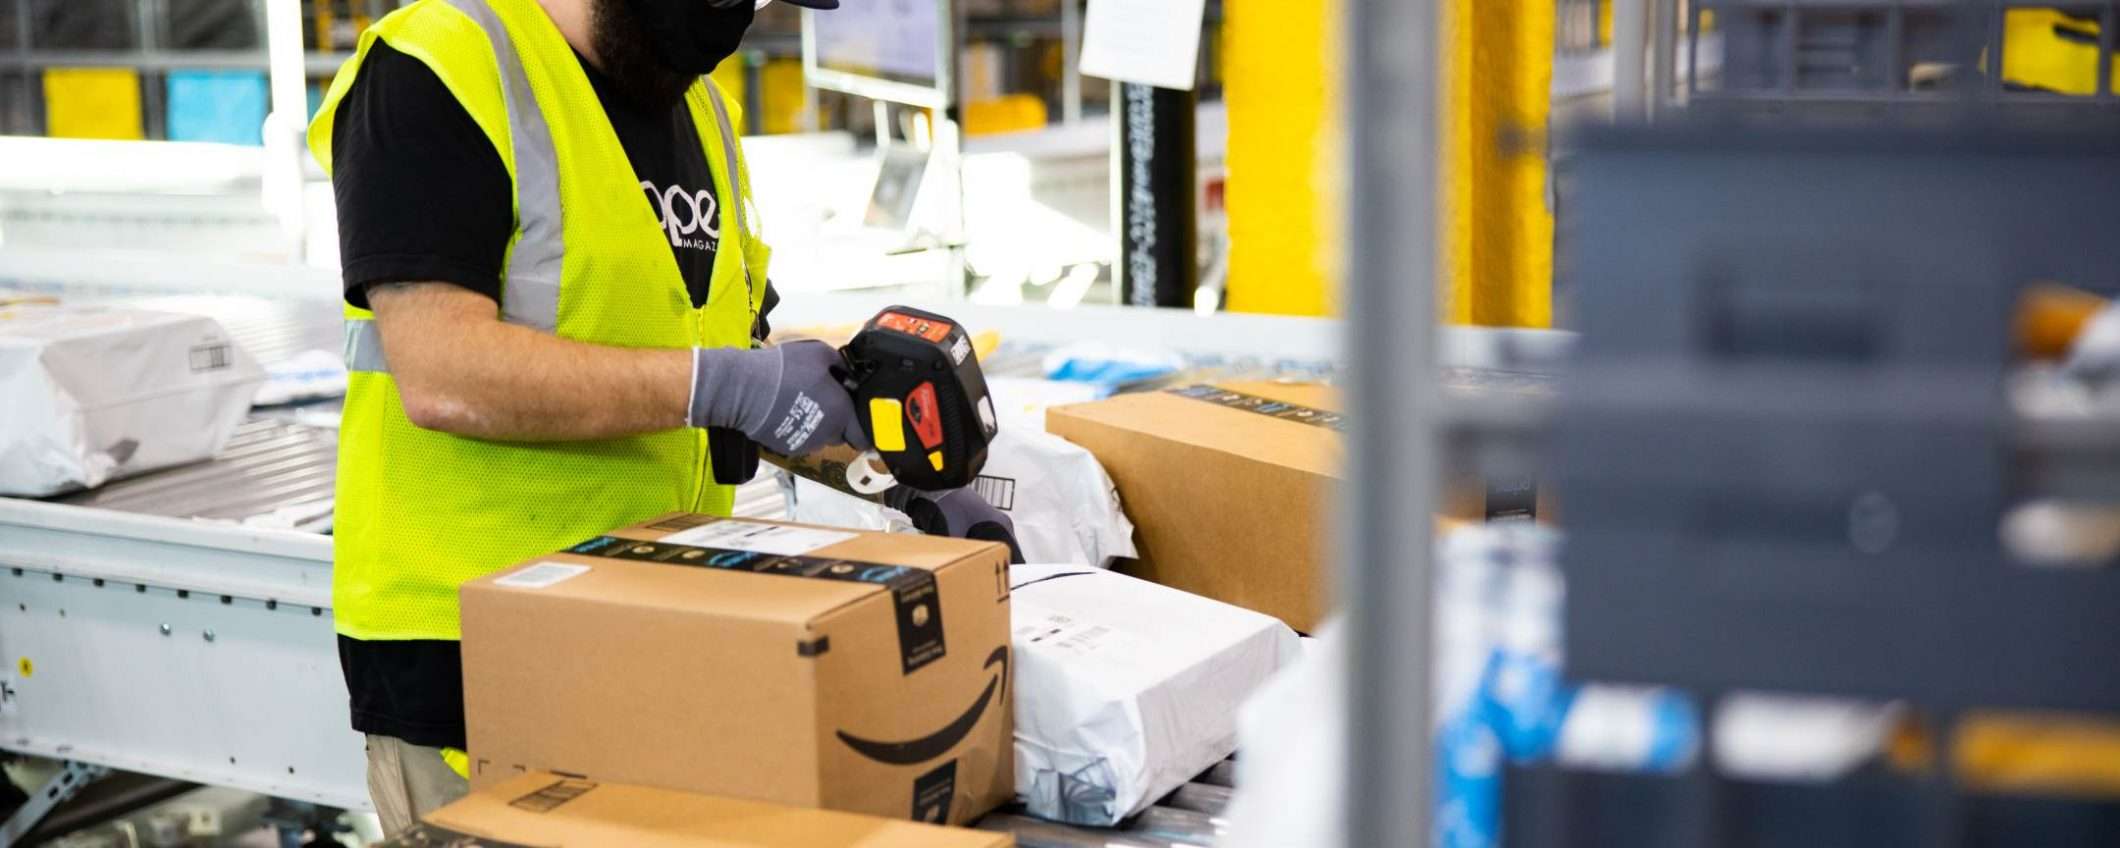 Amazon annuncia due programmi di economia circolare